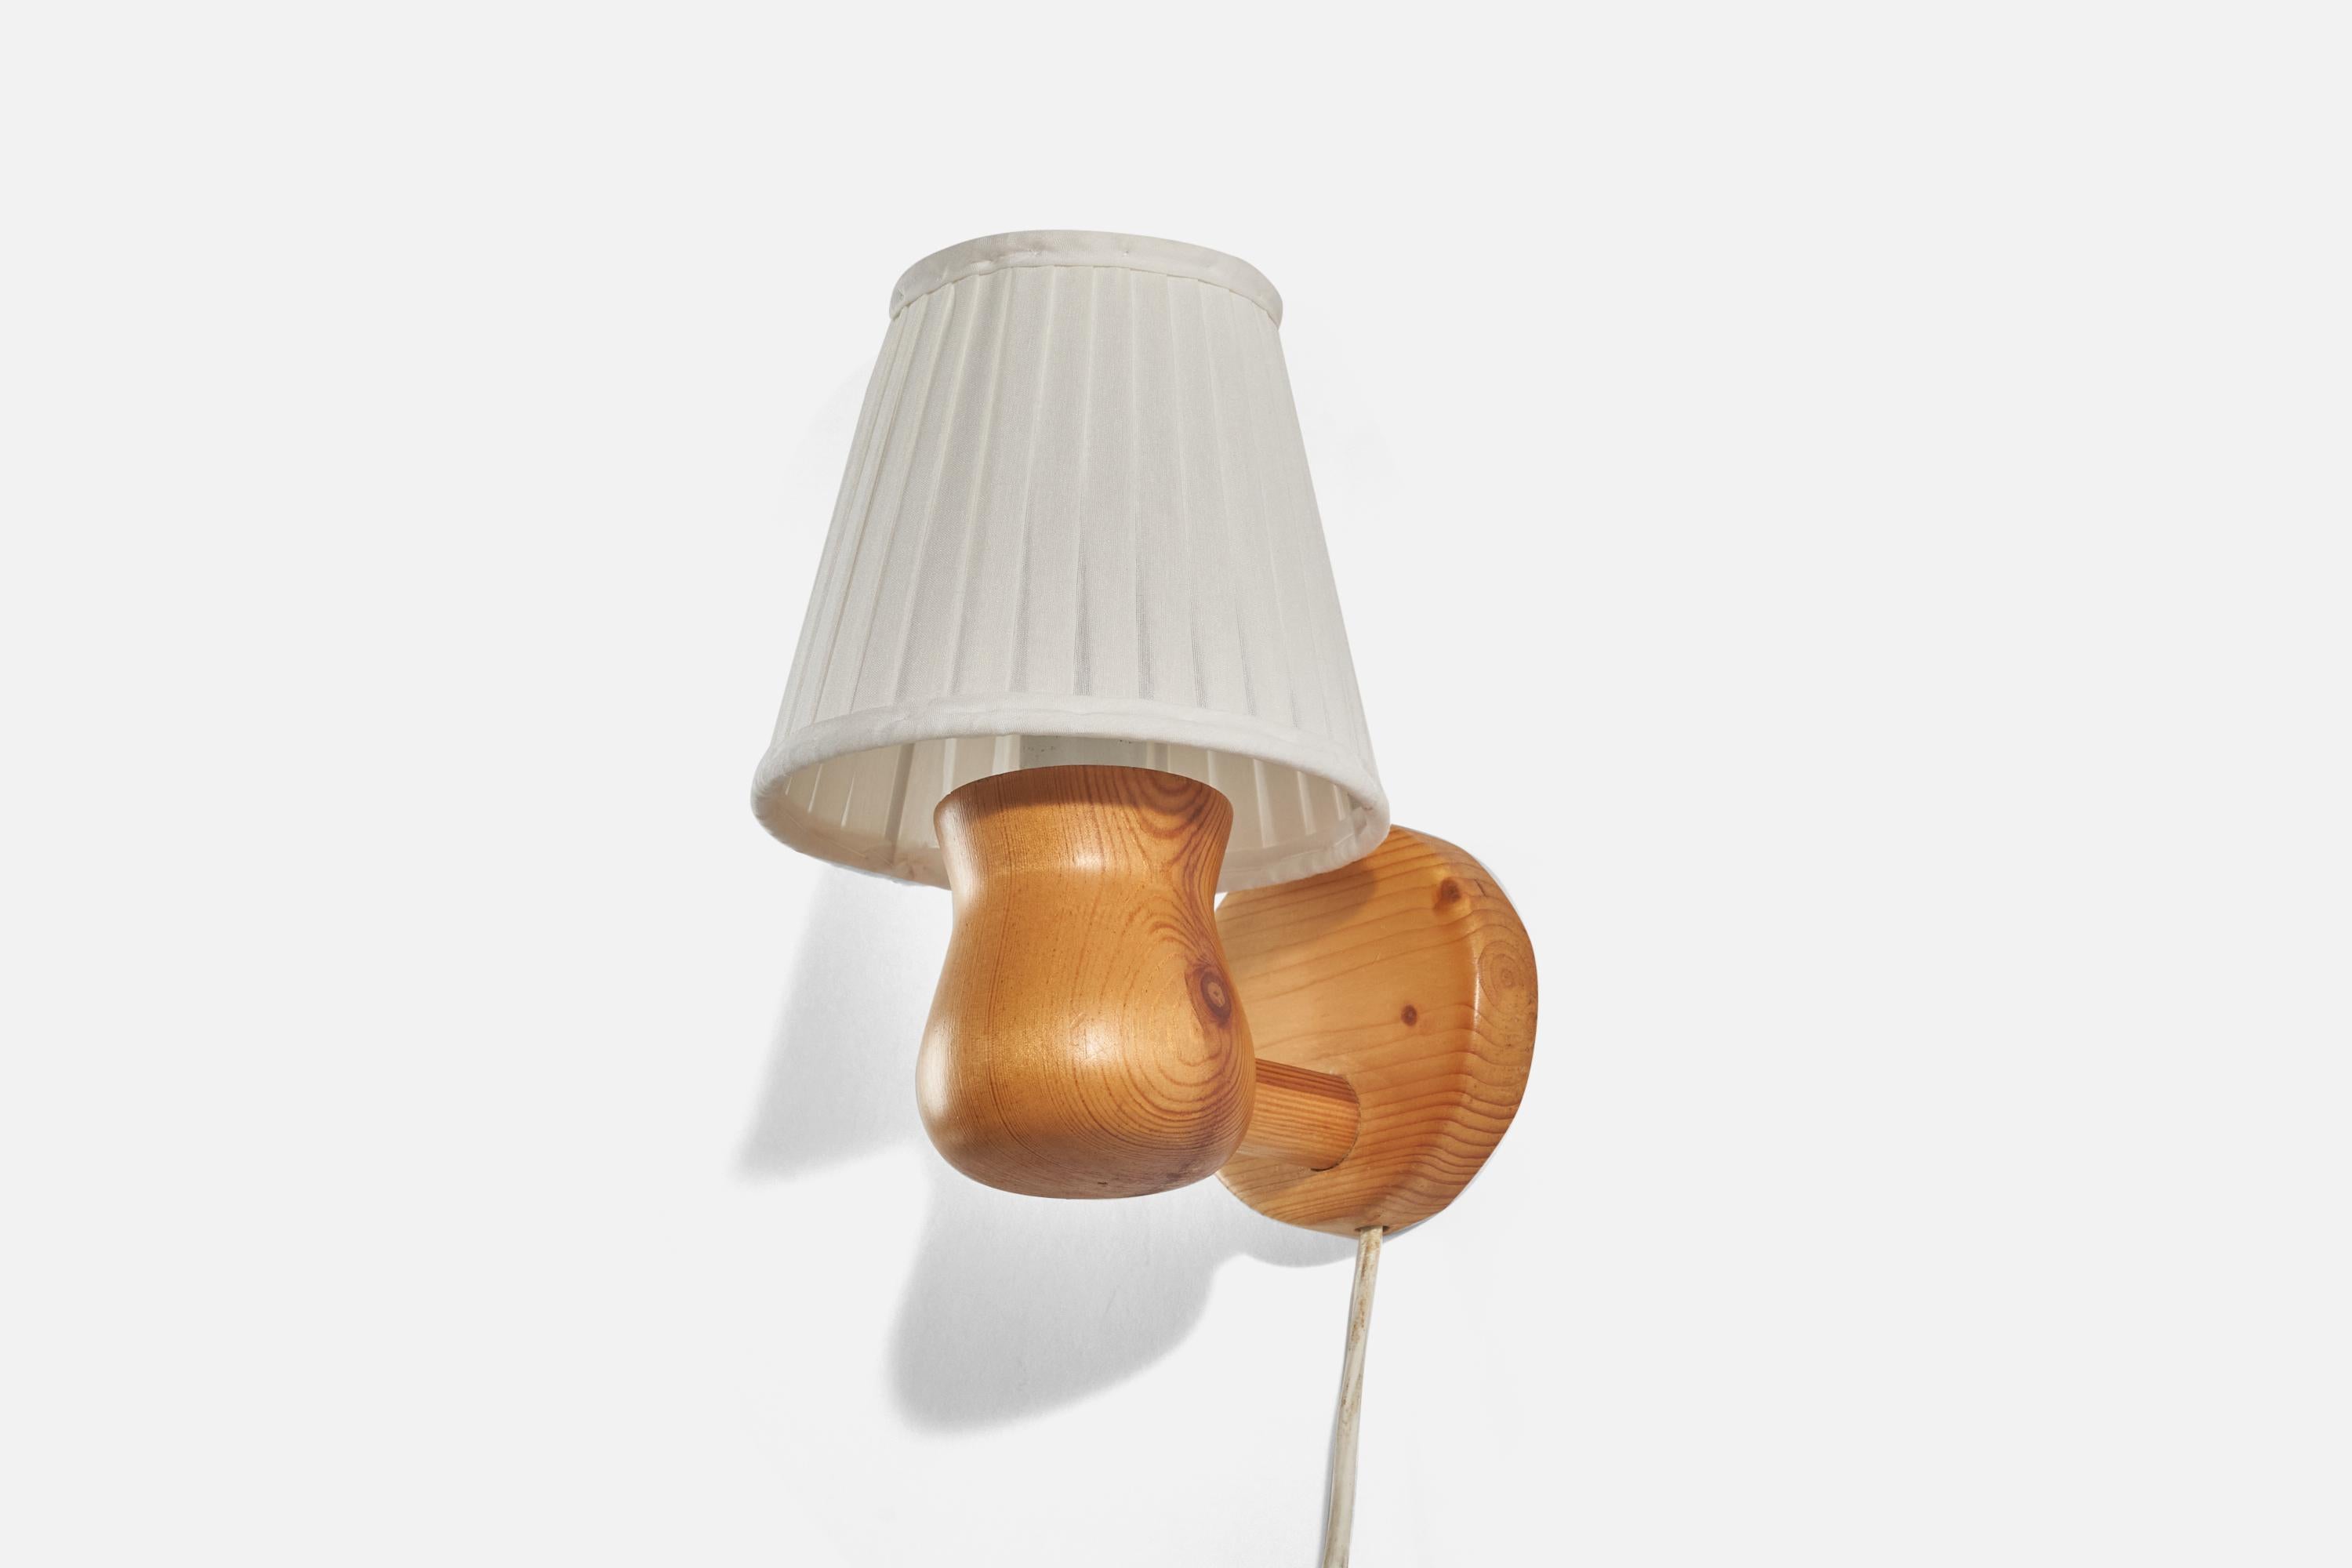 Eine Wandleuchte aus Kiefer und weißem Stoff, entworfen und hergestellt in Schweden in den 1970er Jahren.

Verkauft mit Lampenschirm. Die angegebenen Maße beziehen sich auf die Leuchte mit Schirm(en).

Abmessungen der Rückplatte (Zoll) : 3,62 x